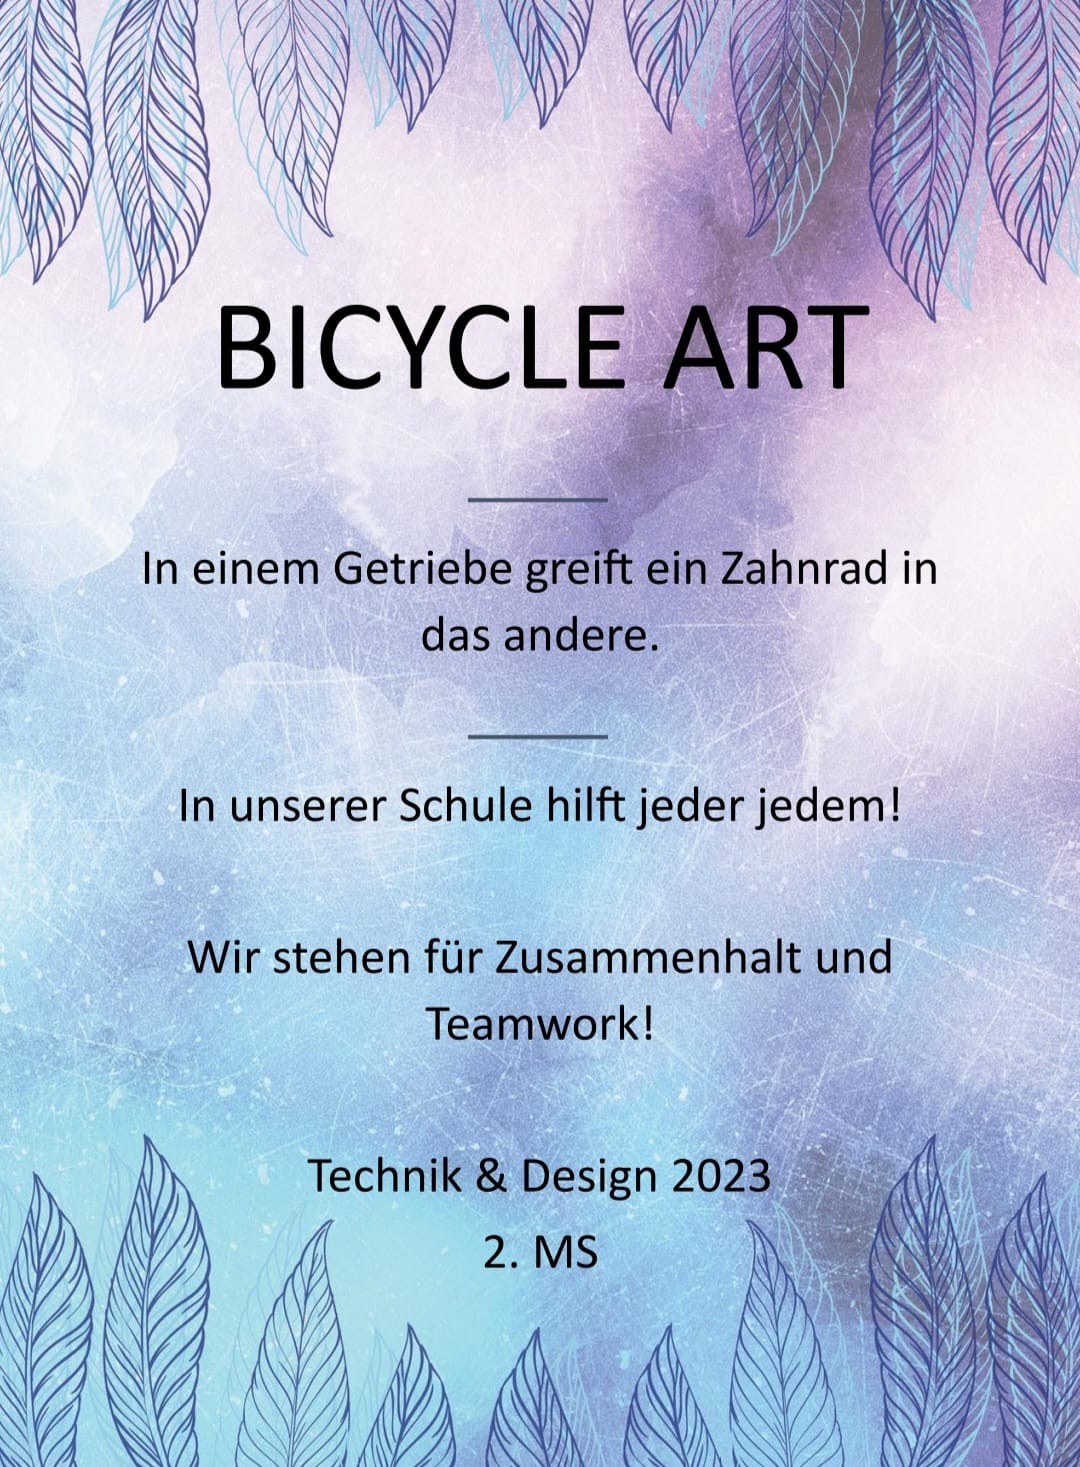 Bicycle Art - Bild 1